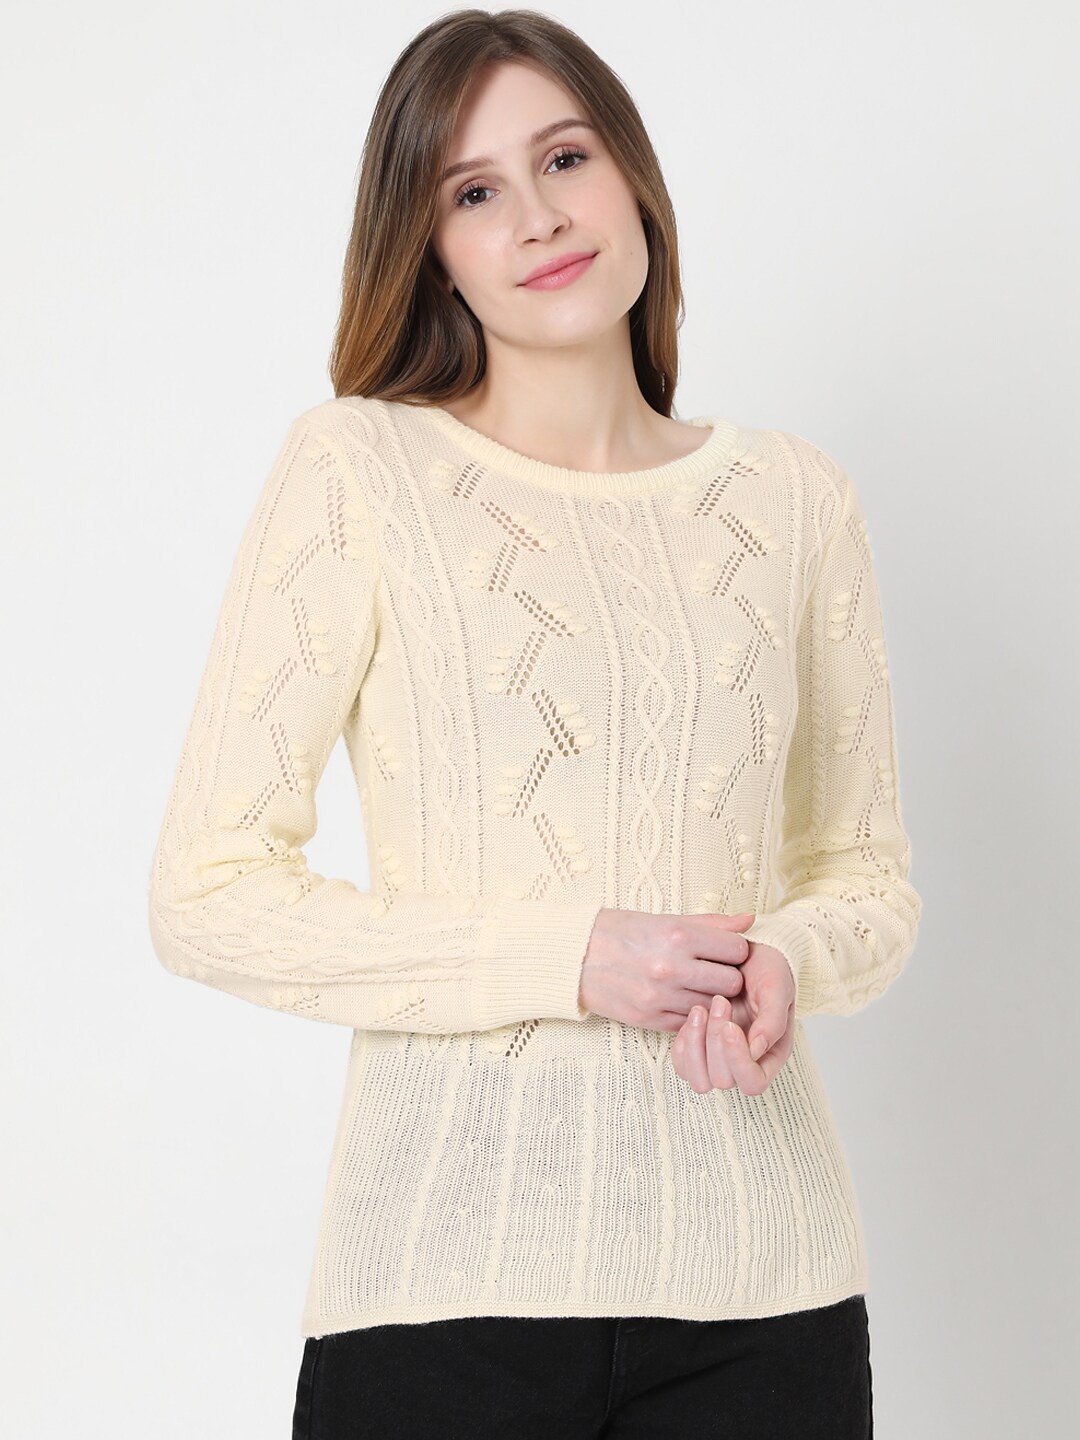 Vero Moda Women Cream-Coloured Cable Knit Pullover Sweater Price in India